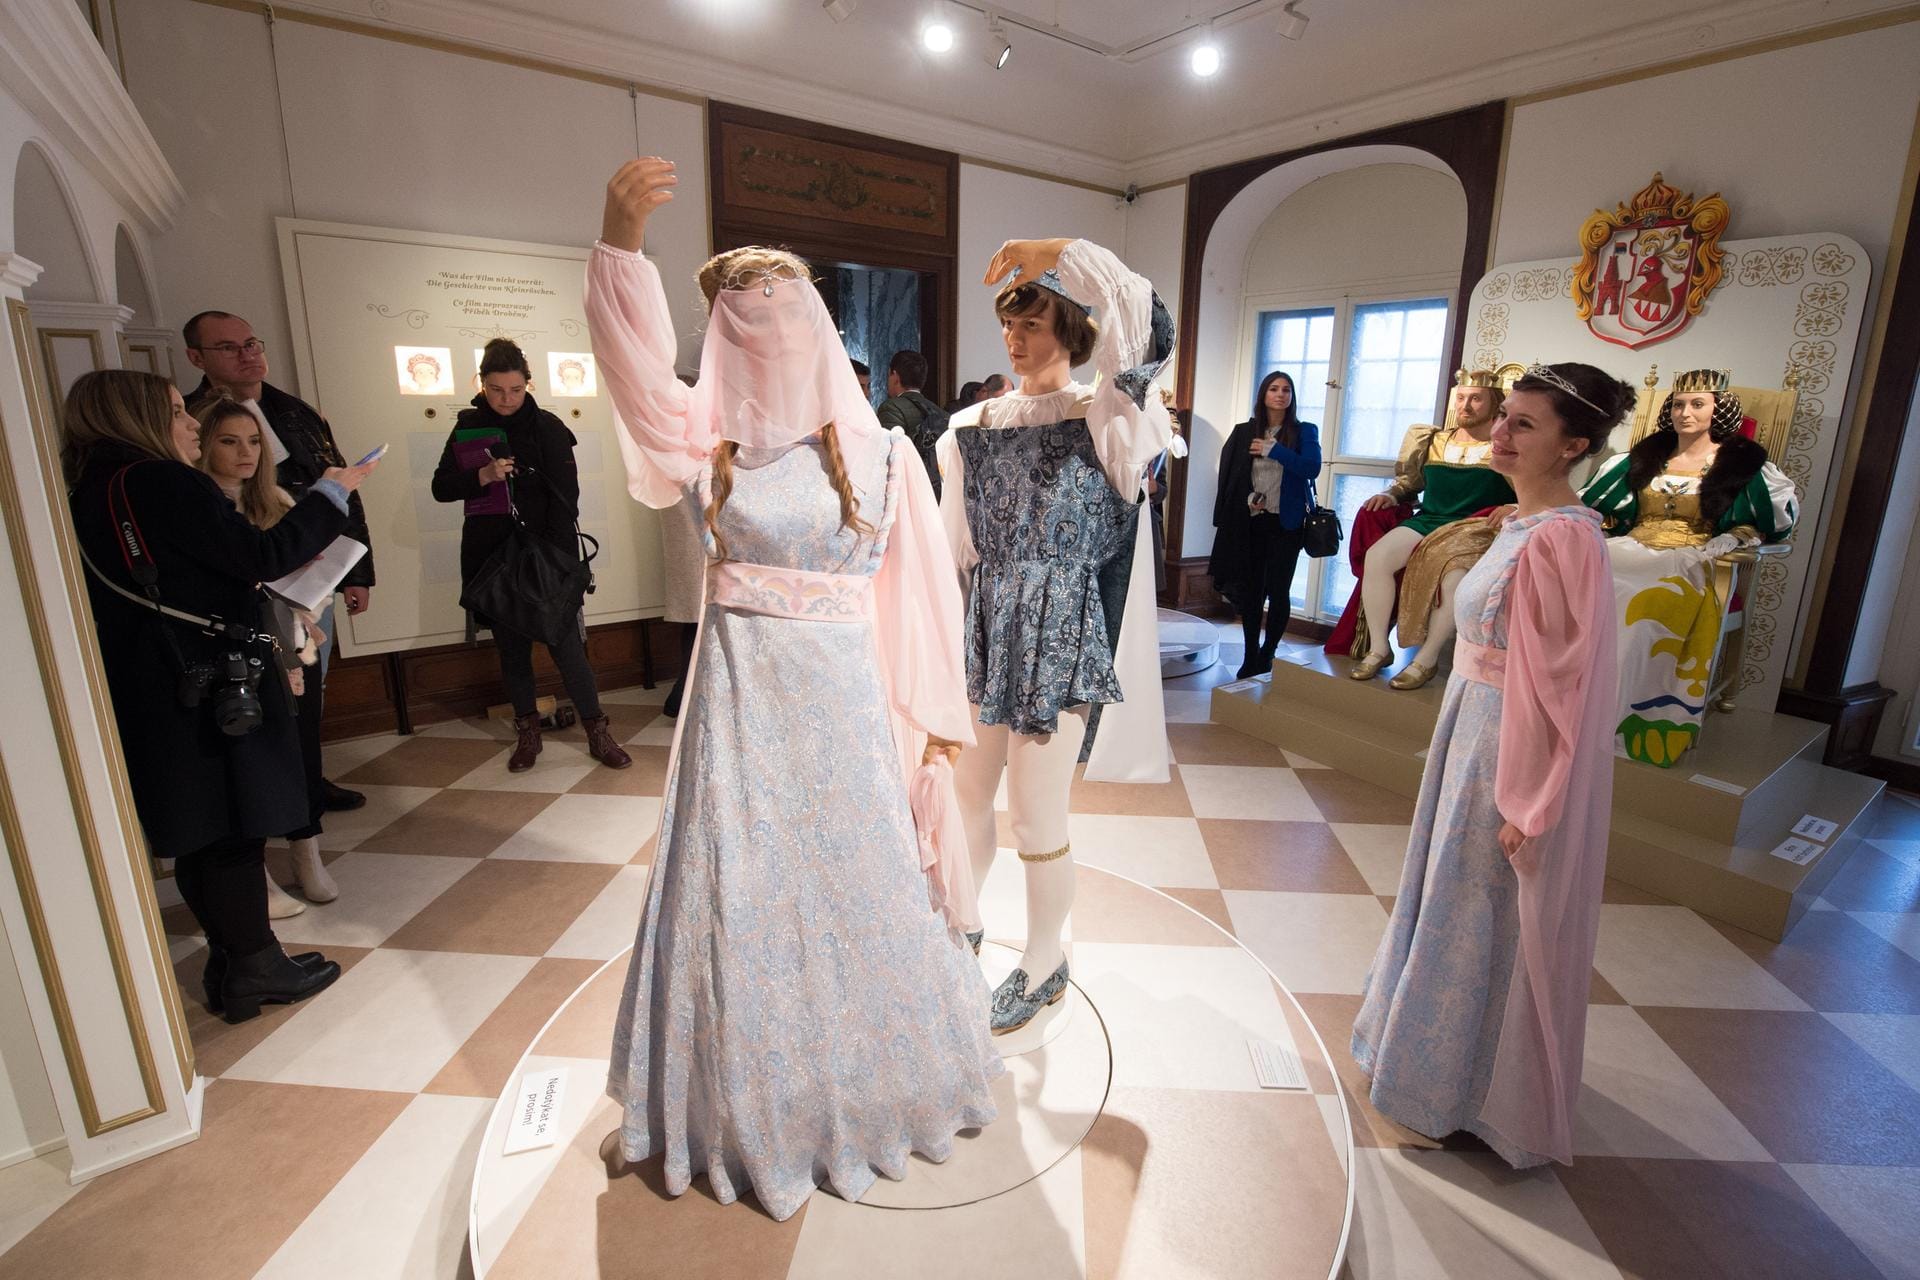 Besucher stehen am 17.11.2017 im einstigen Jagdschloss der Wettiner in Moritzburg (Sachsen) in der Ausstellung "Drei Haselnüsse für Aschenbrödel". In diesem Raum sind die Kostüme von Aschenbrödel und dem Prinzen zu sehen, die beide auf dem Ball tragen.